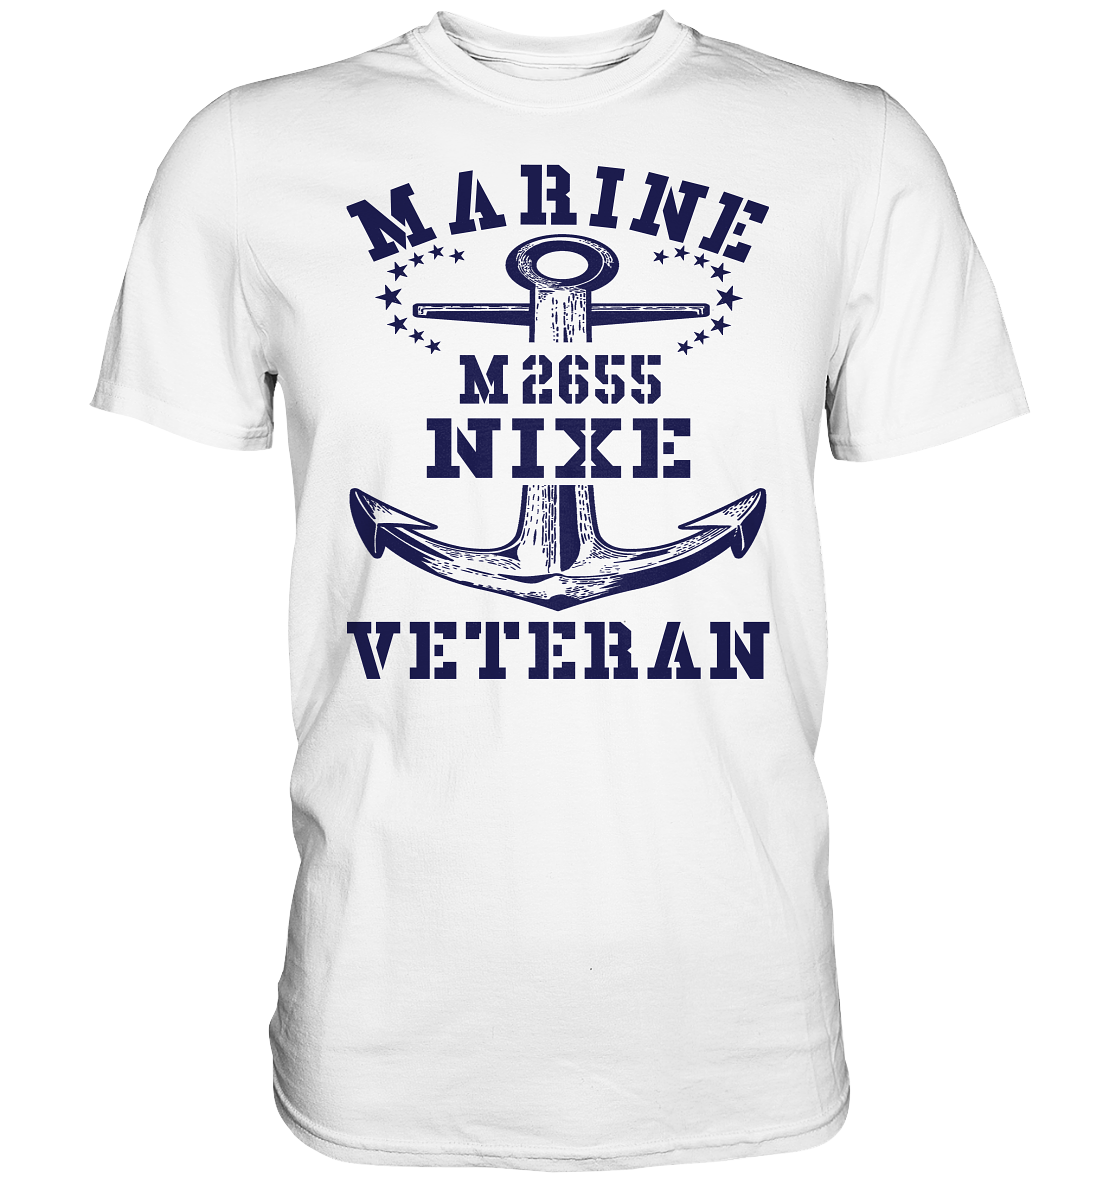 BiMi M2655 NIXE Marine Veteran - Premium Shirt